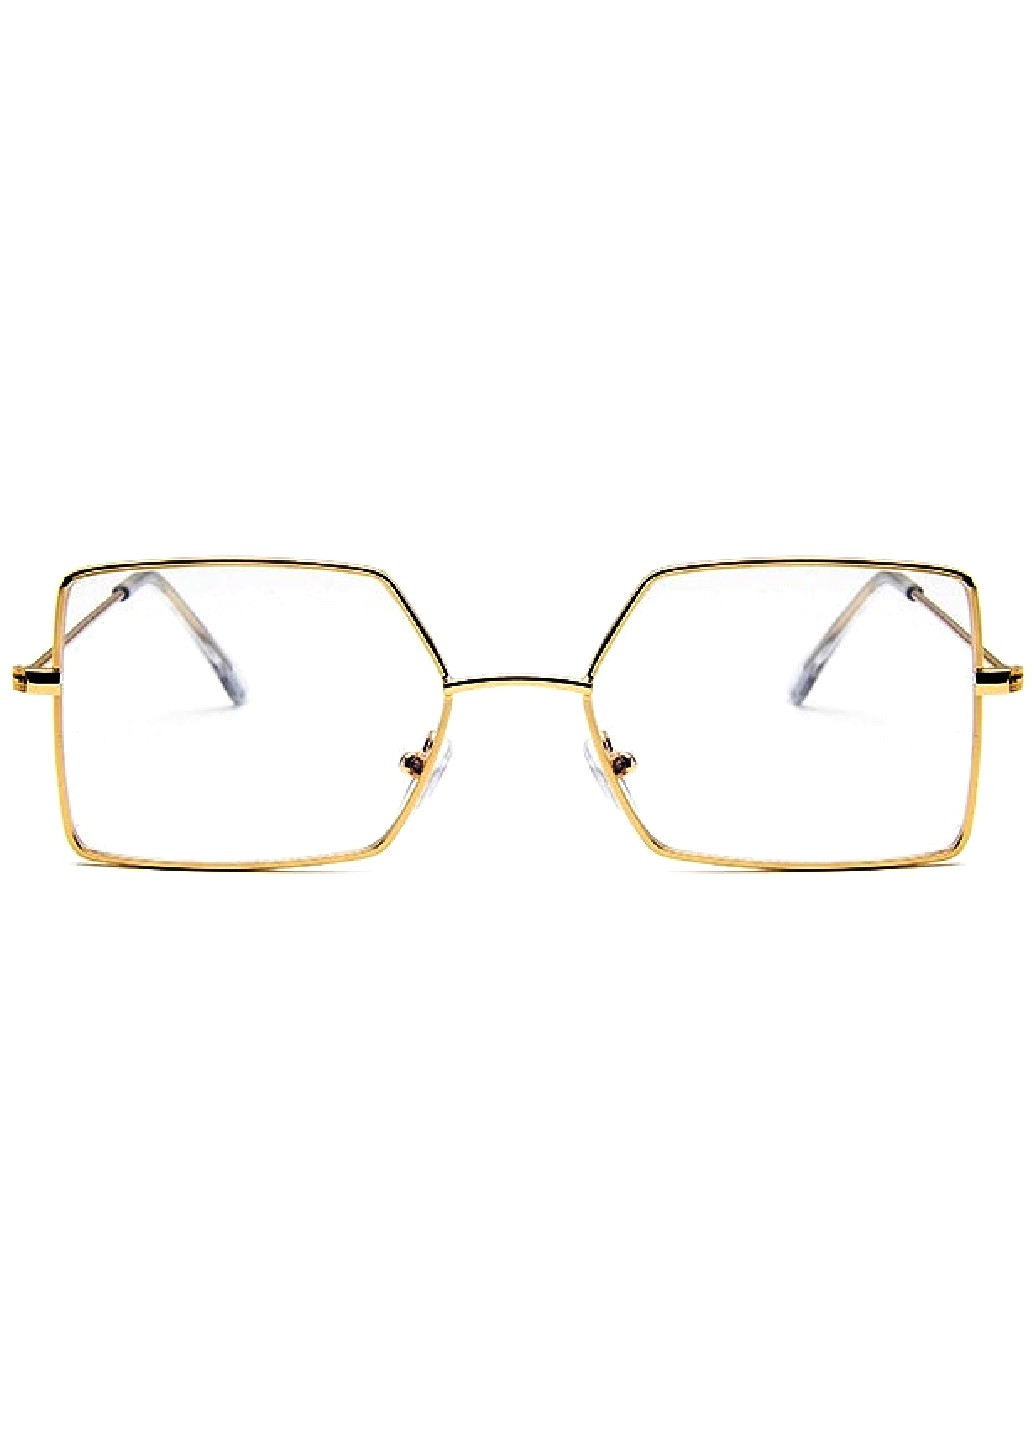 Имиджевые очки A&Co. золотые